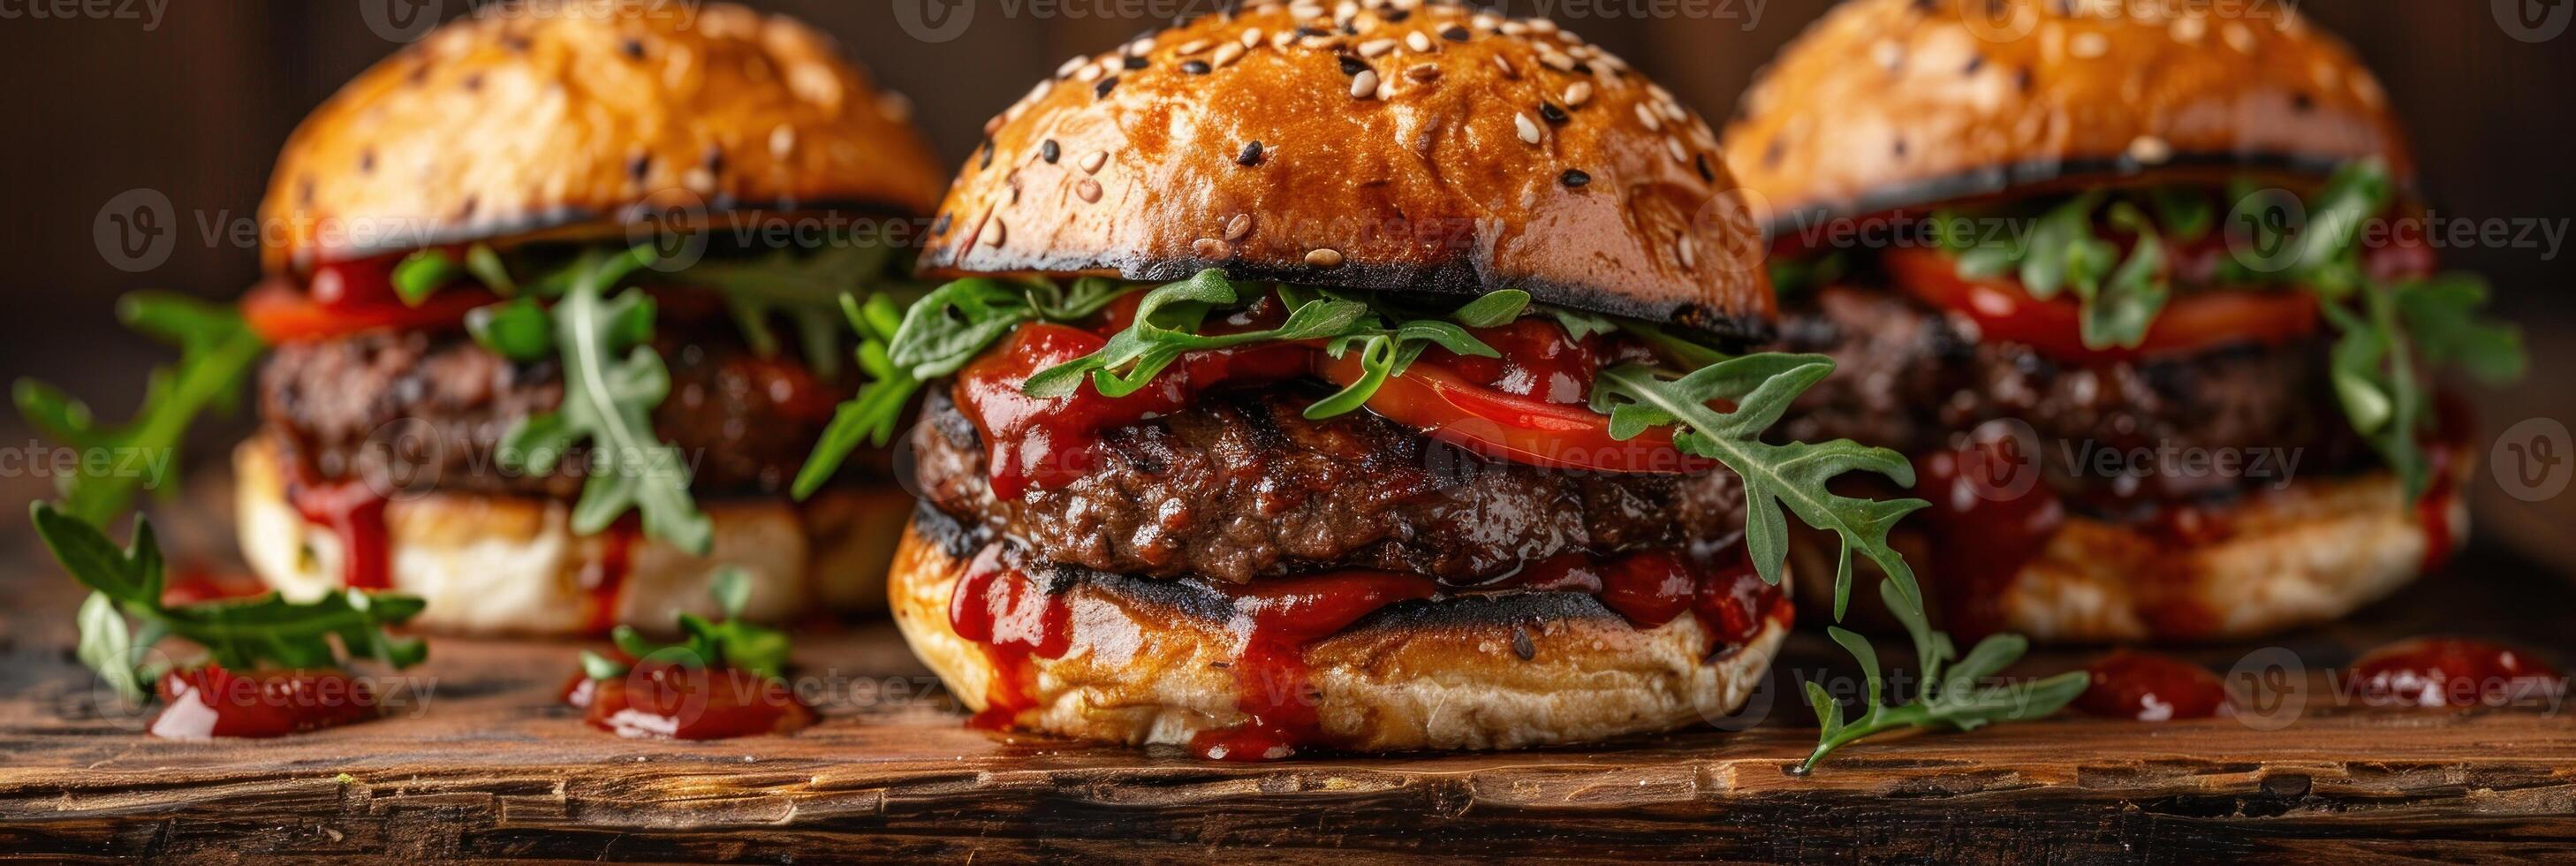 tre hamburger pieno con carne, lattuga, e pomodoro salsa foto